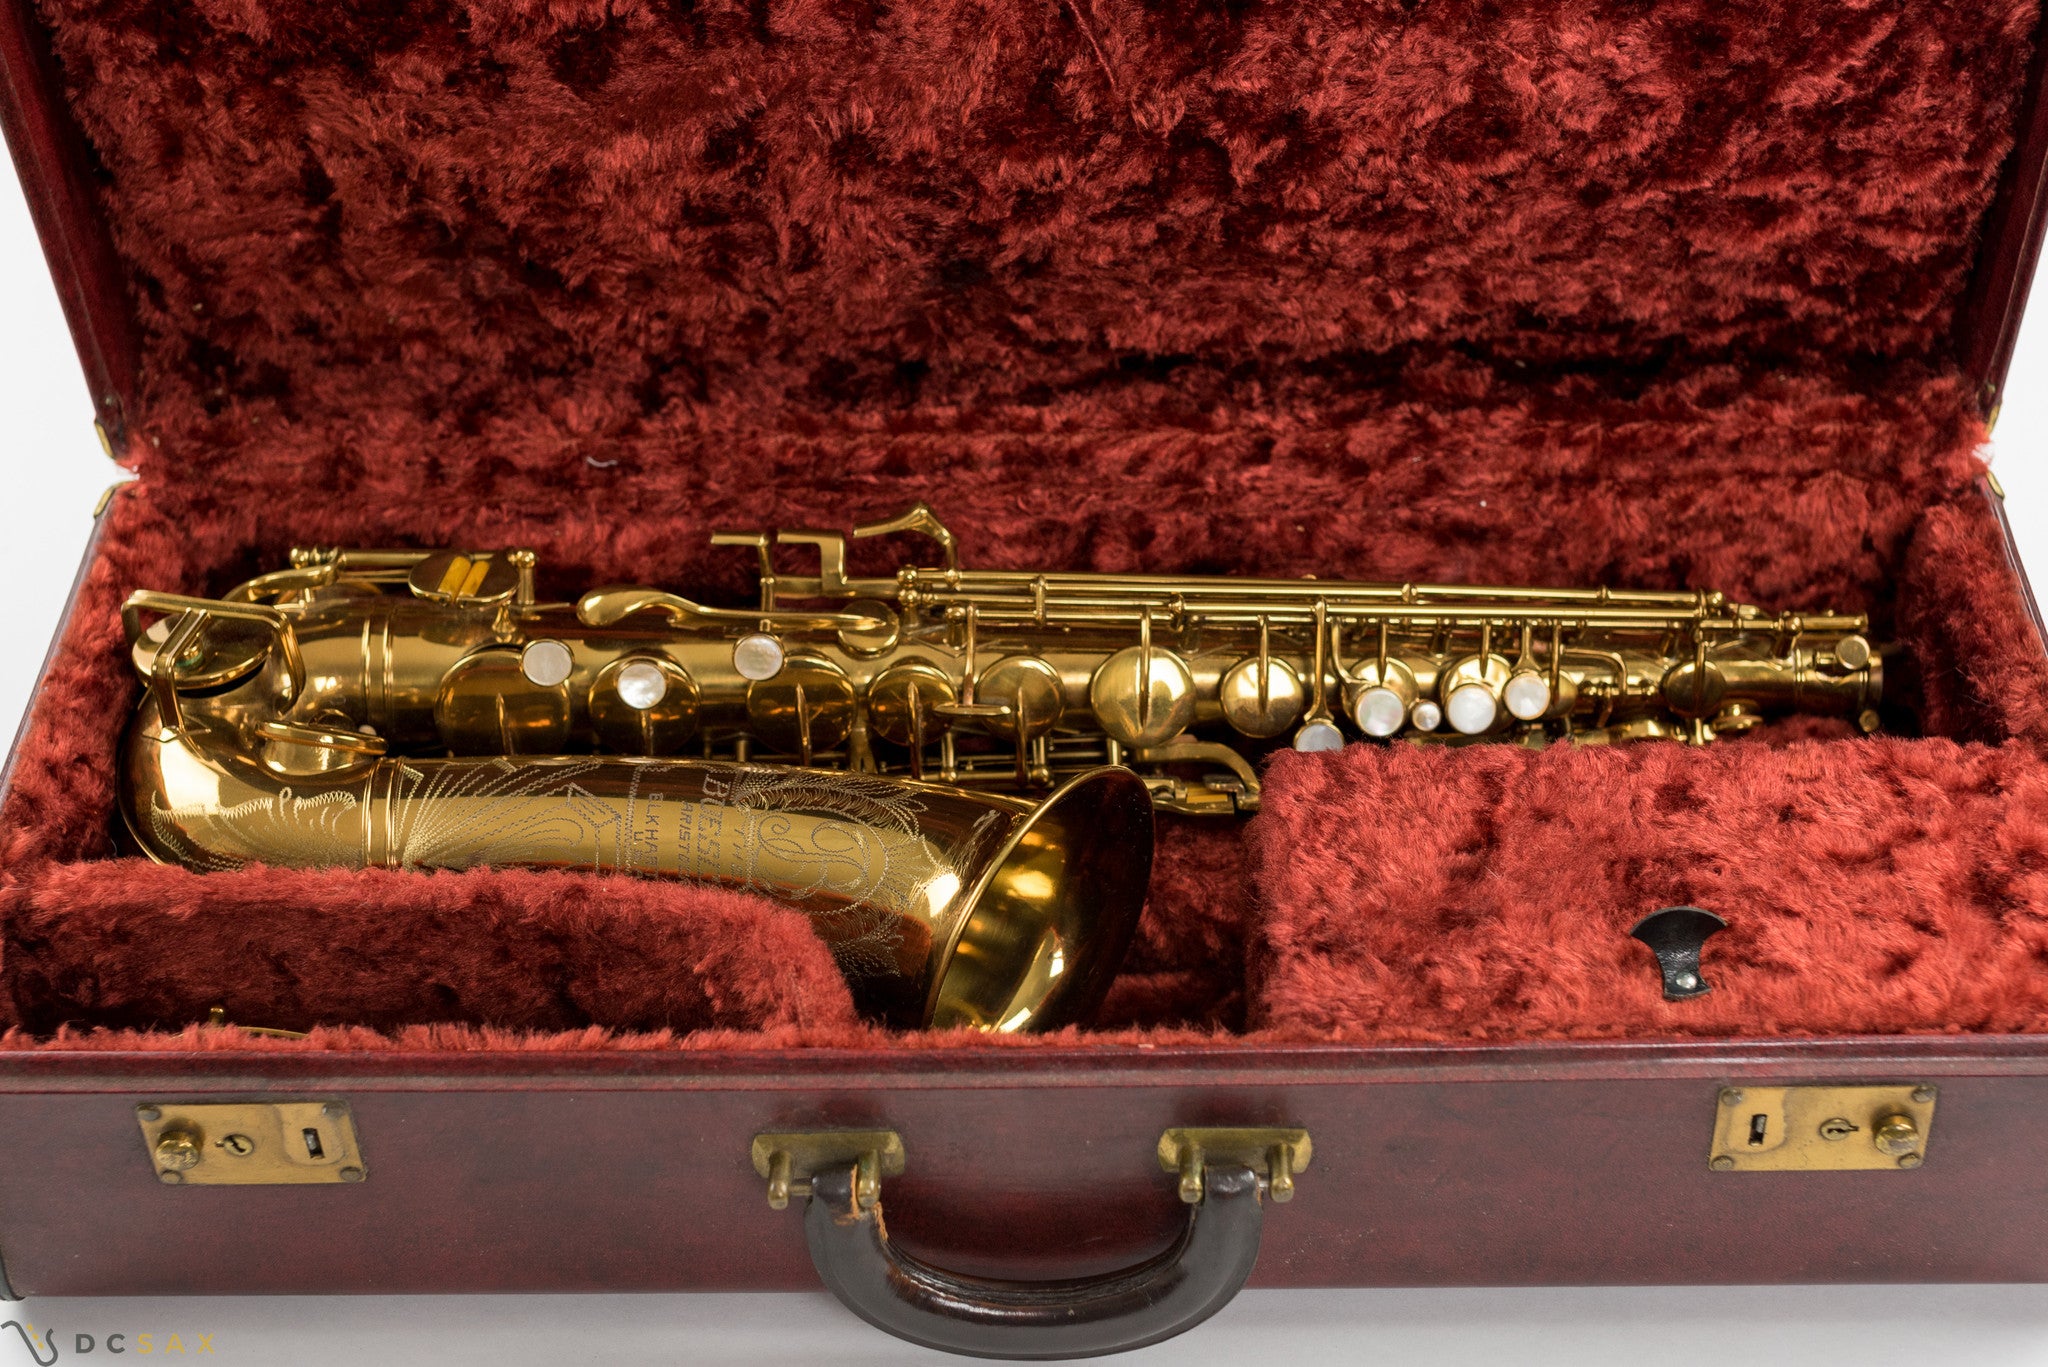 Buescher Aristocrat "Big B" Alto Saxophone, Near Mint